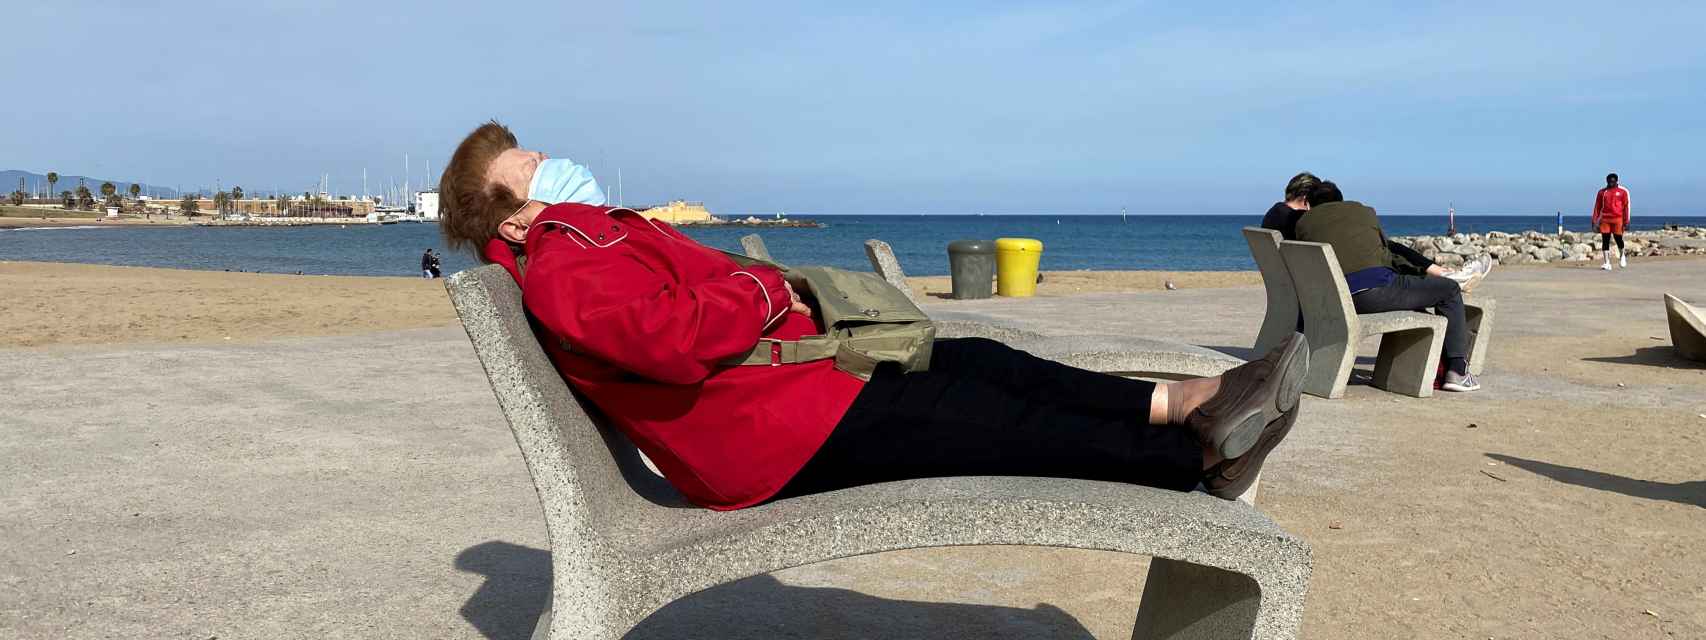 Una mujer descansa con una mascarilla en una playa de Barcelona.